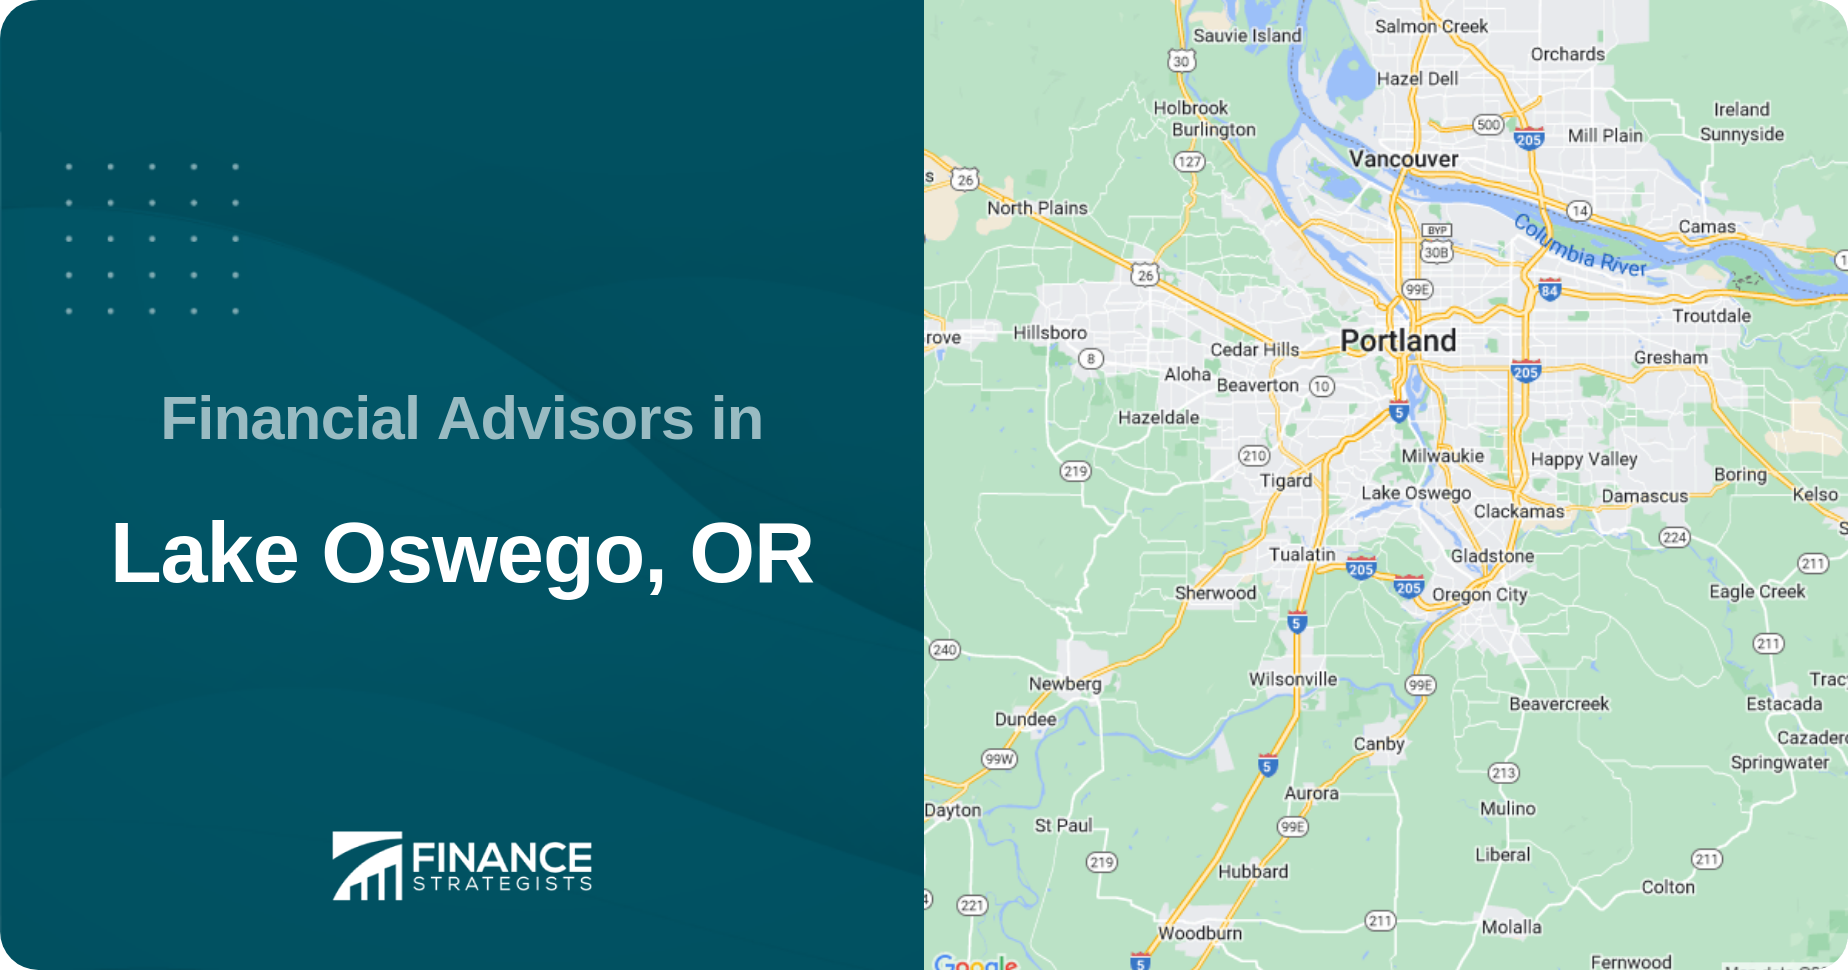 Financial Advisors in Lake Oswego, OR